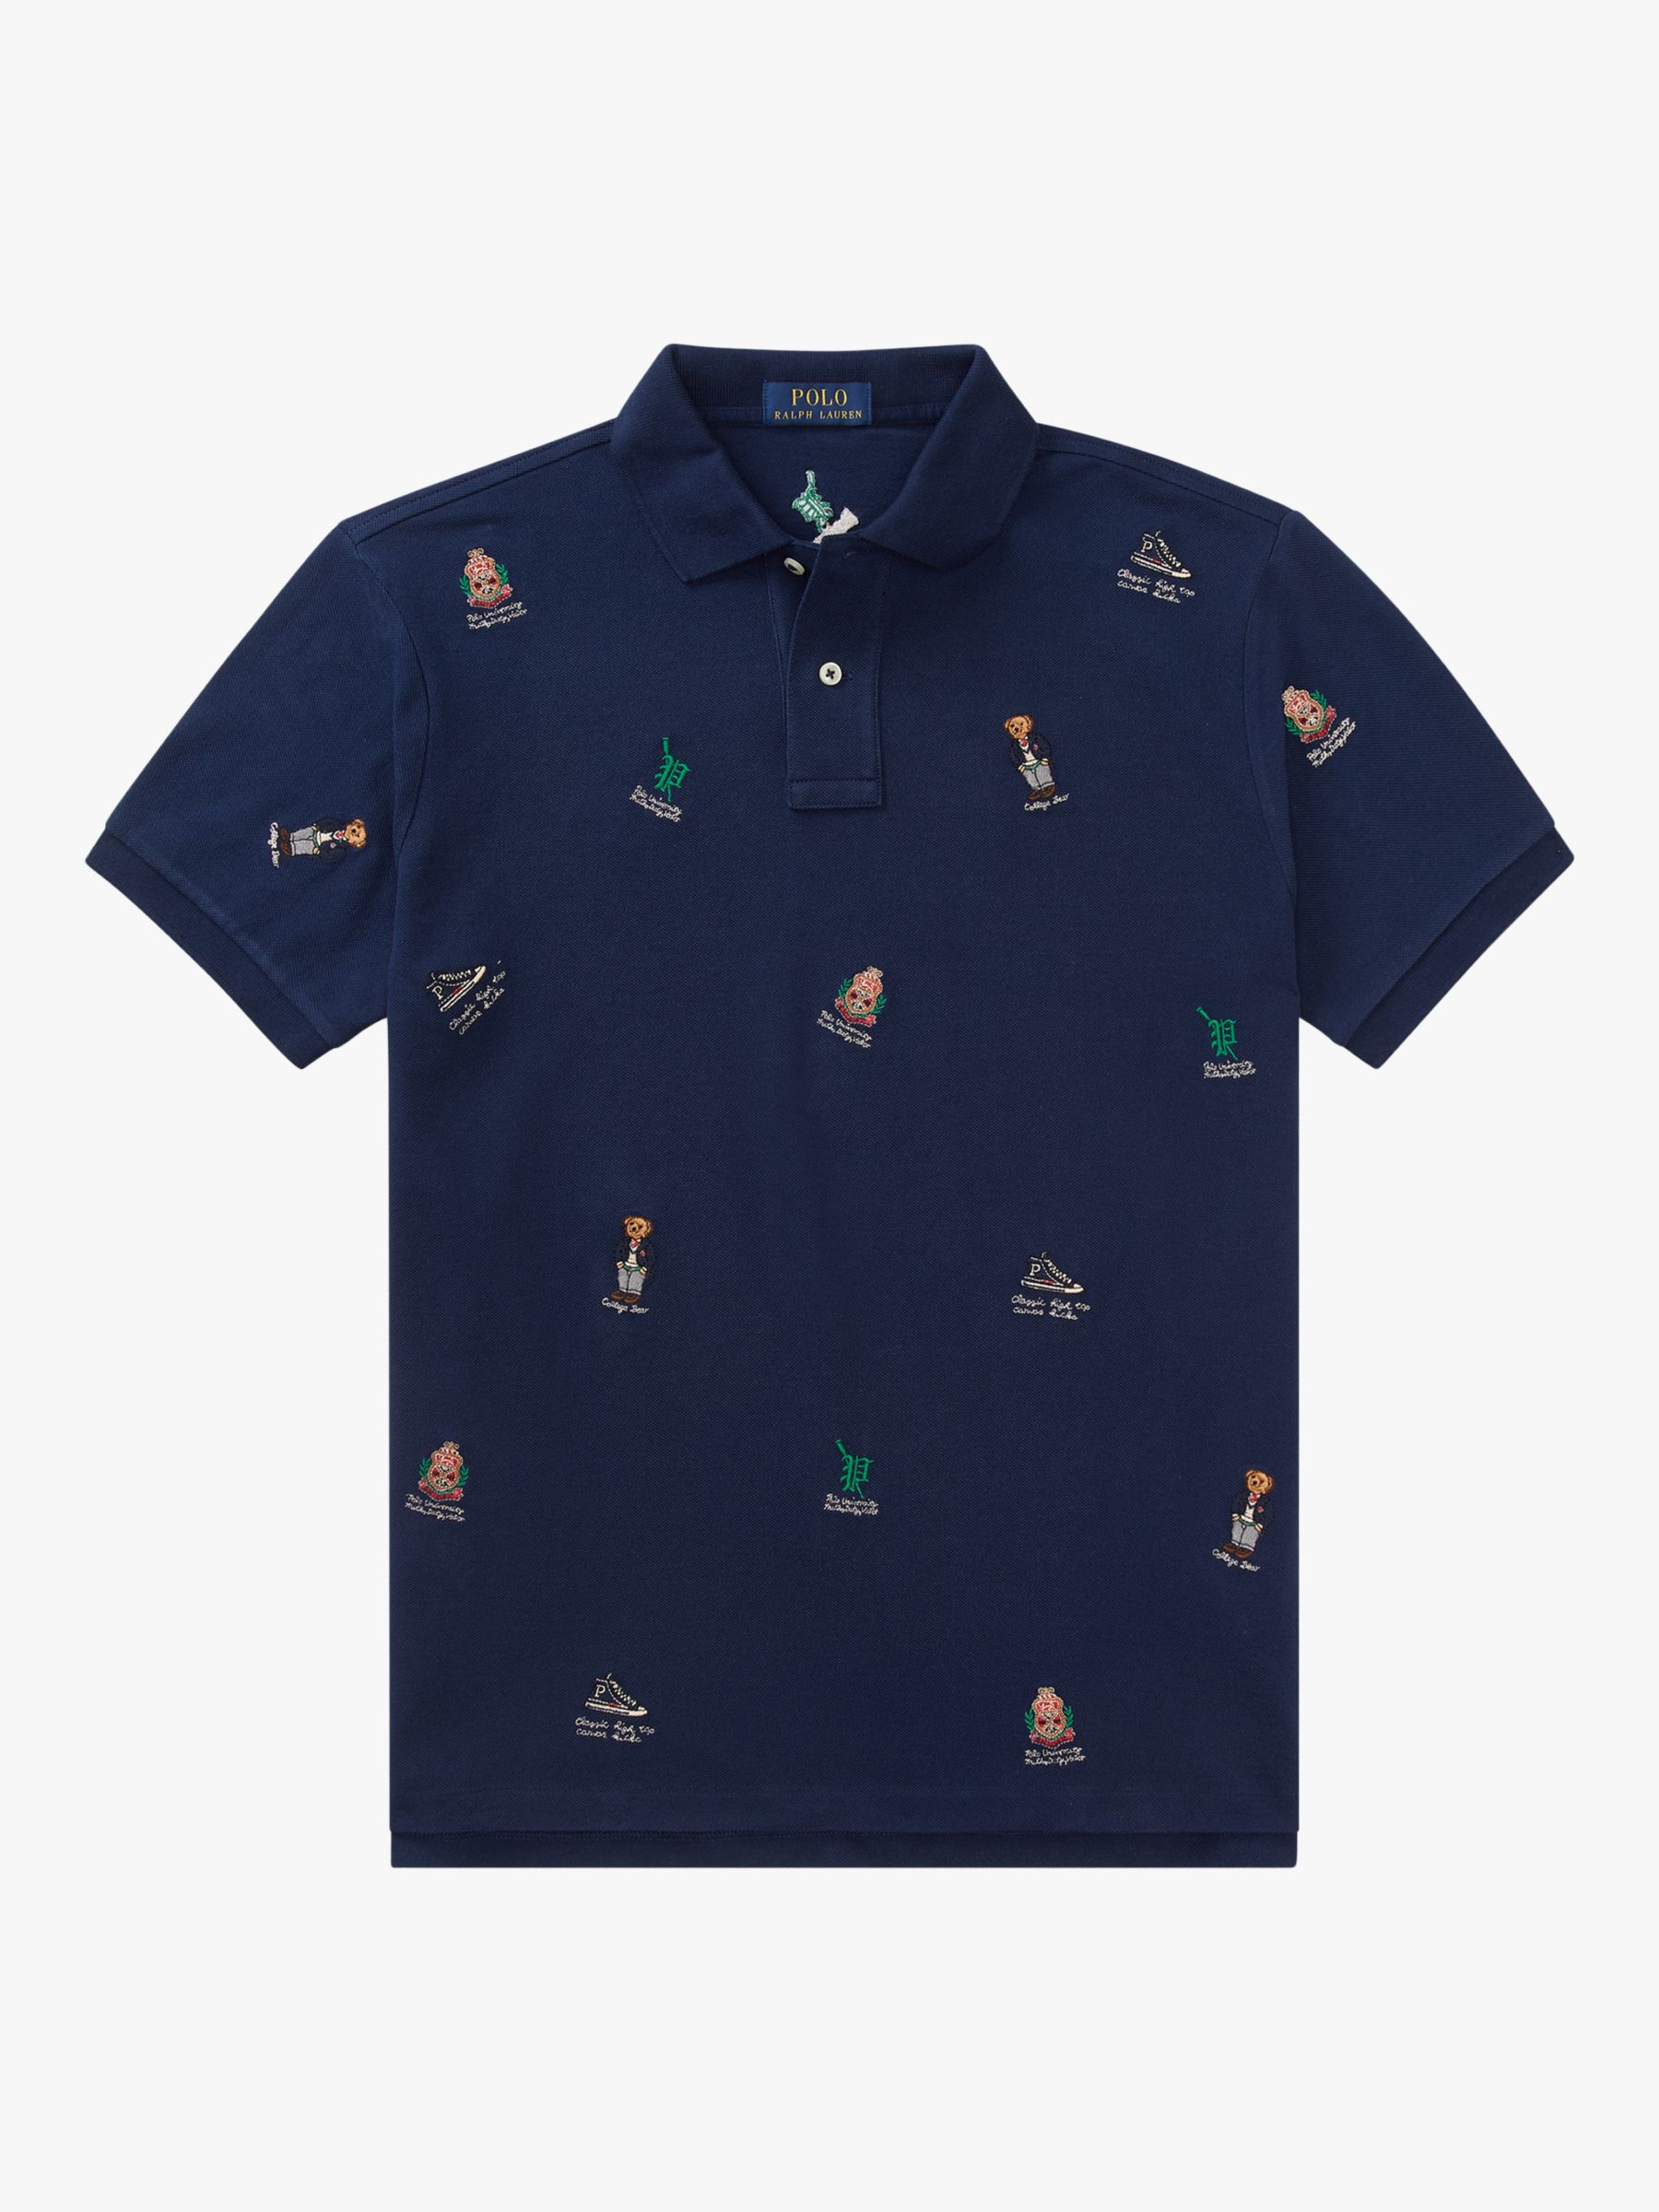 newport navy ralph lauren polo shirt